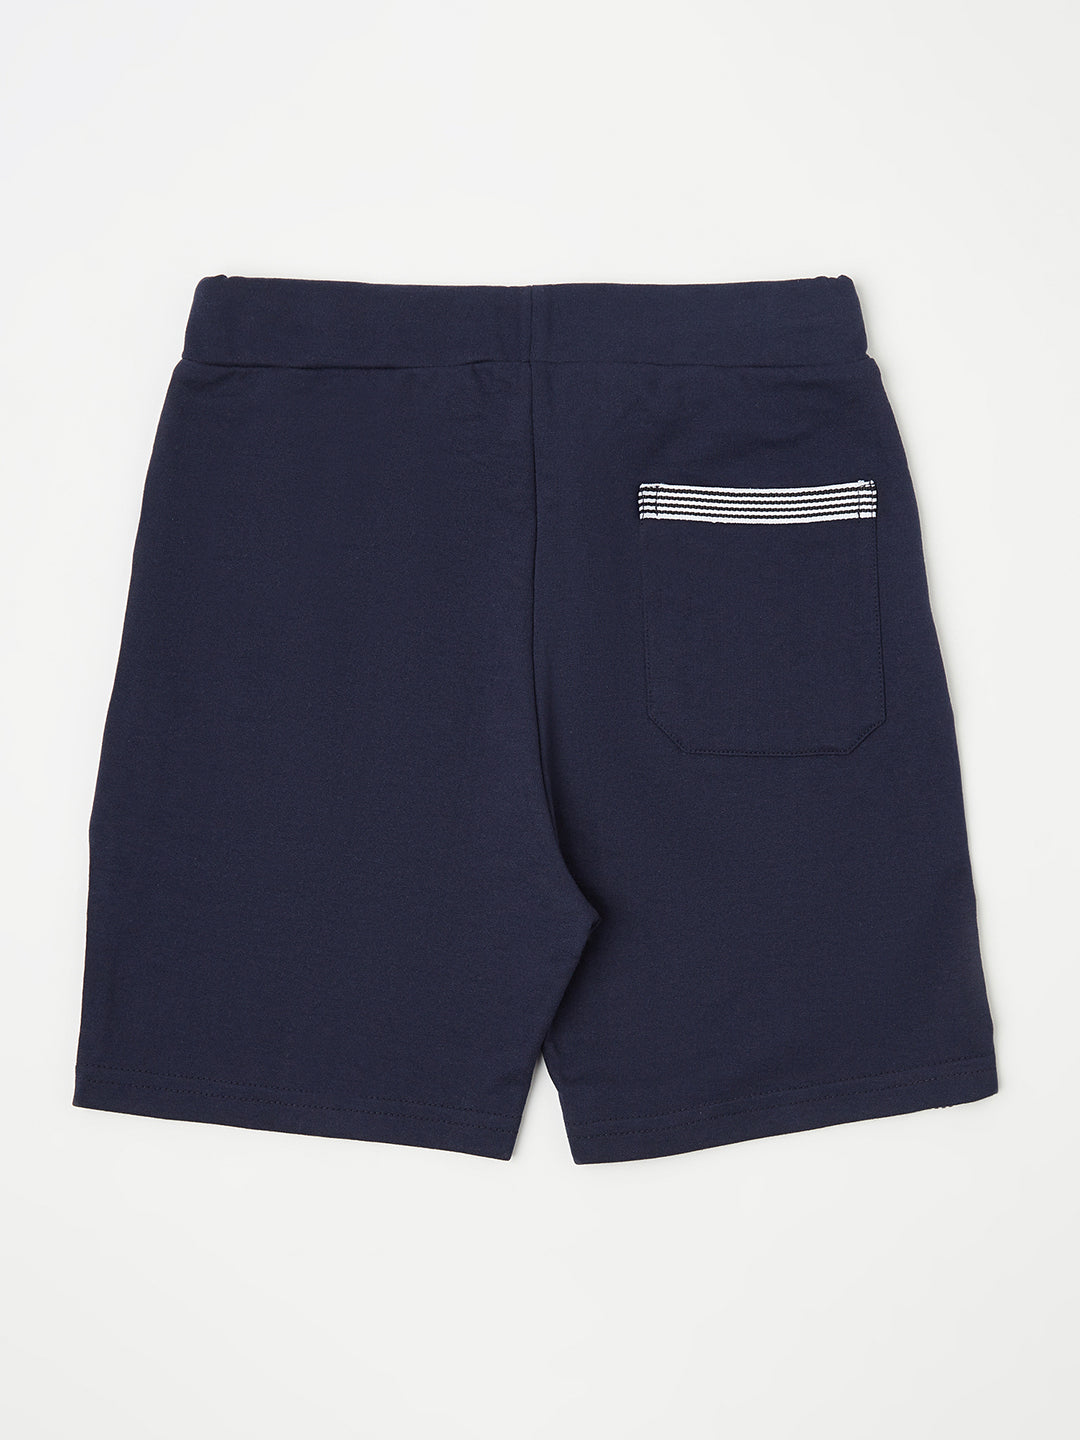 Navy Blue Typography Shorts - Boys Shorts